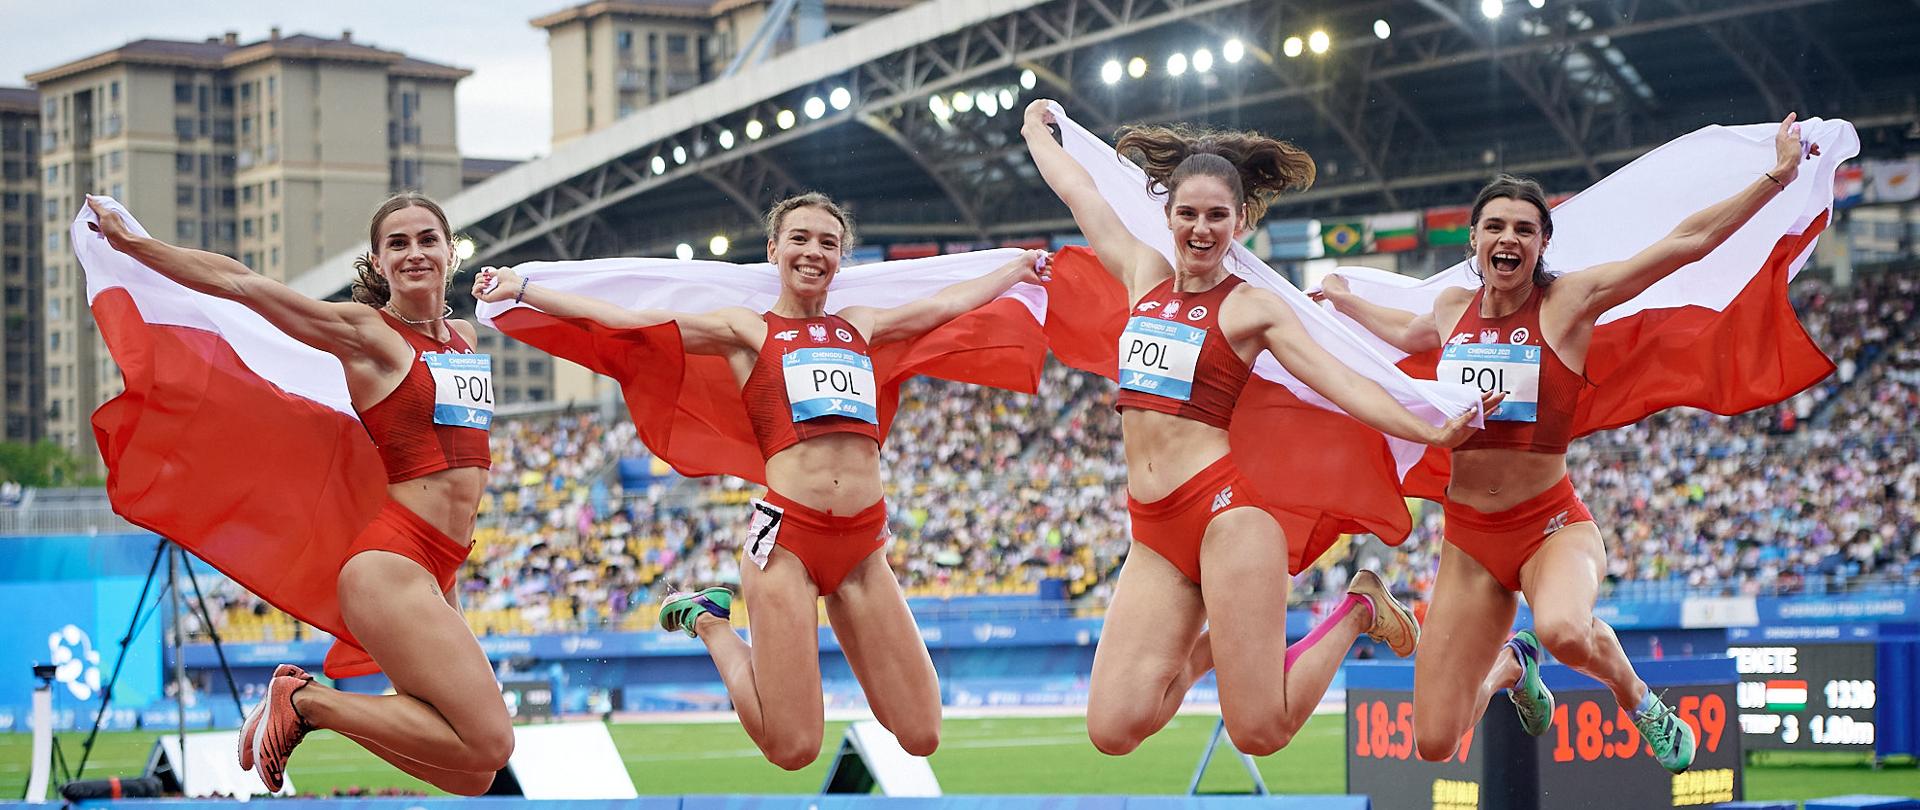 Cztery trzymające biało-czerwone flagi dziewczyny w czerwonych sportowych strojach skaczą nad boiskiem, w tle trybuny.